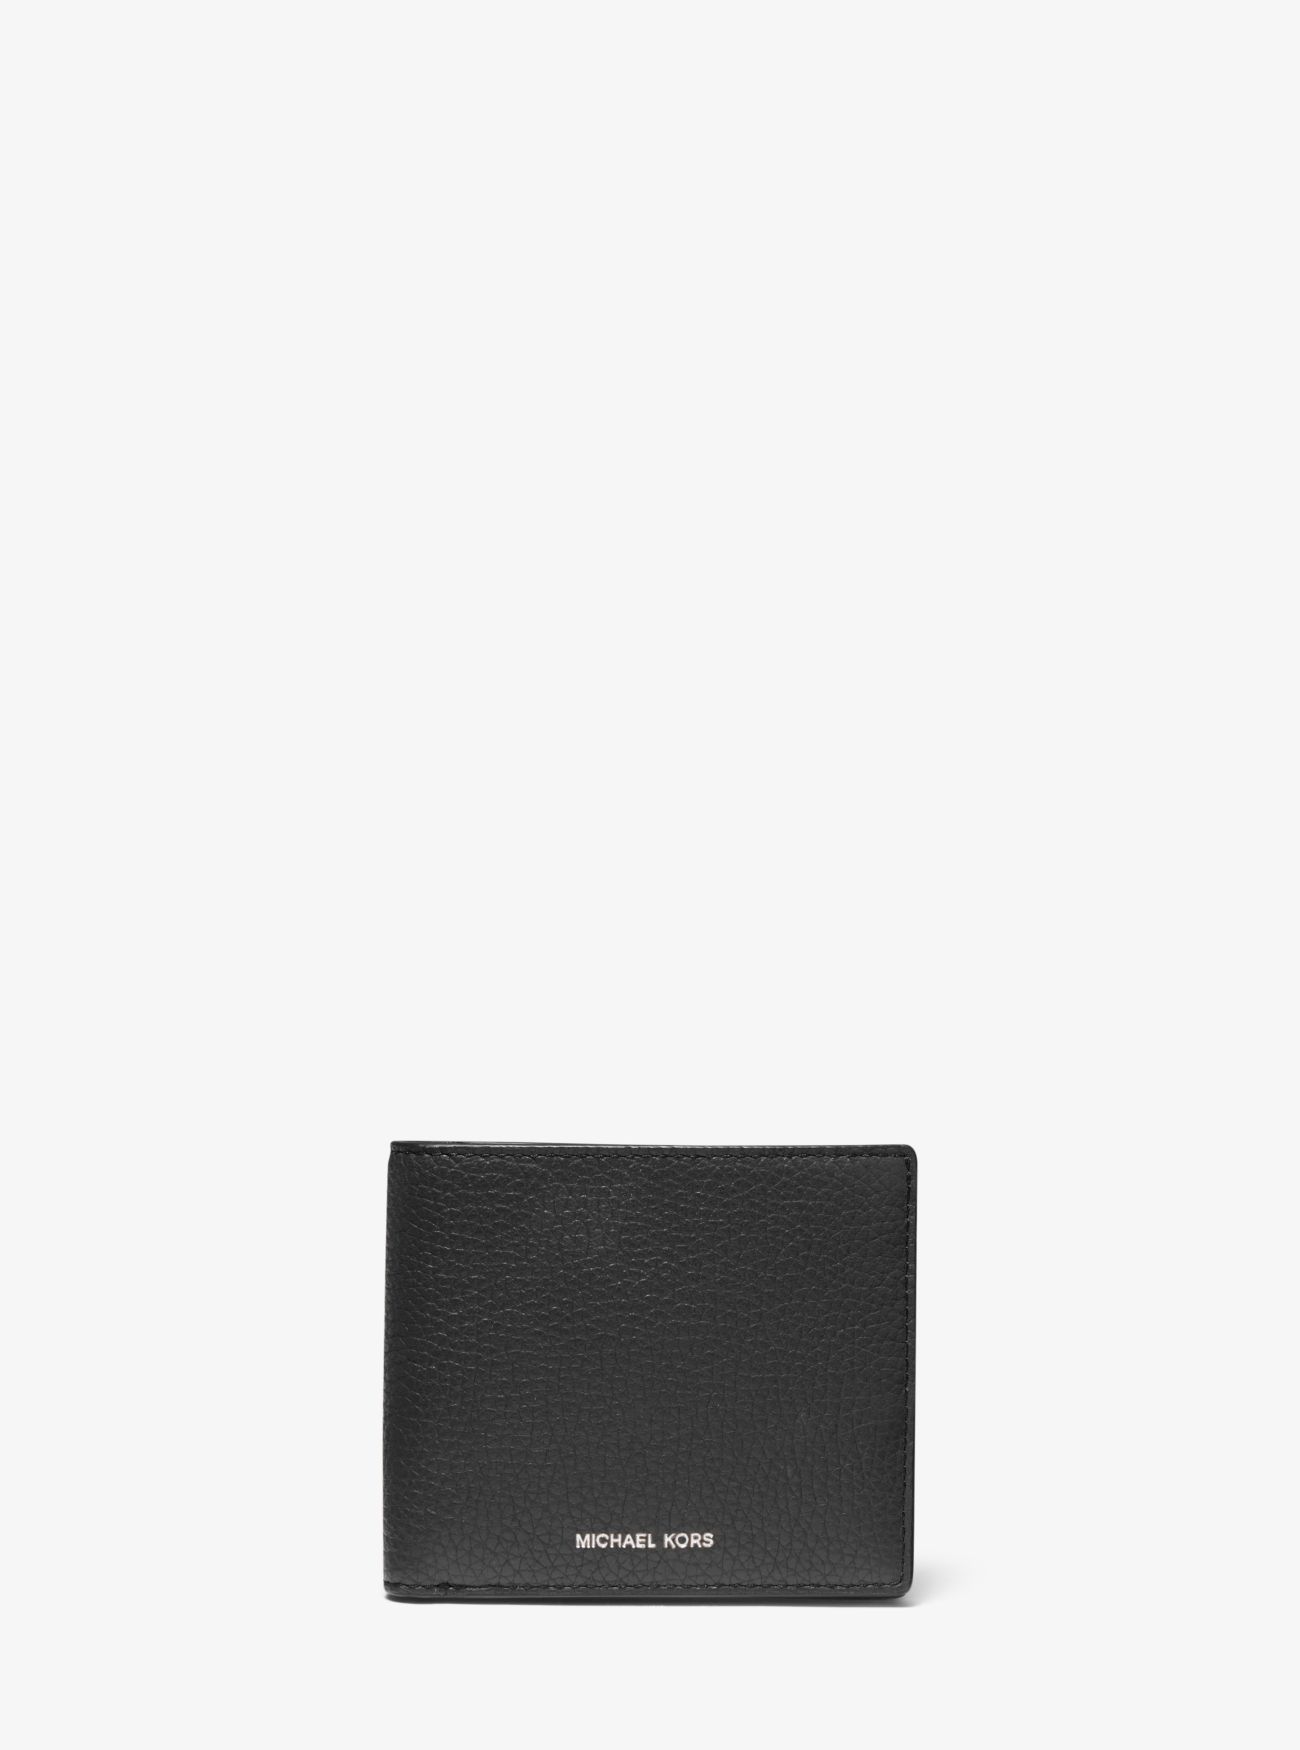 MK Hudson Pebbled Leather Billfold Wallet - Black - Michael Kors